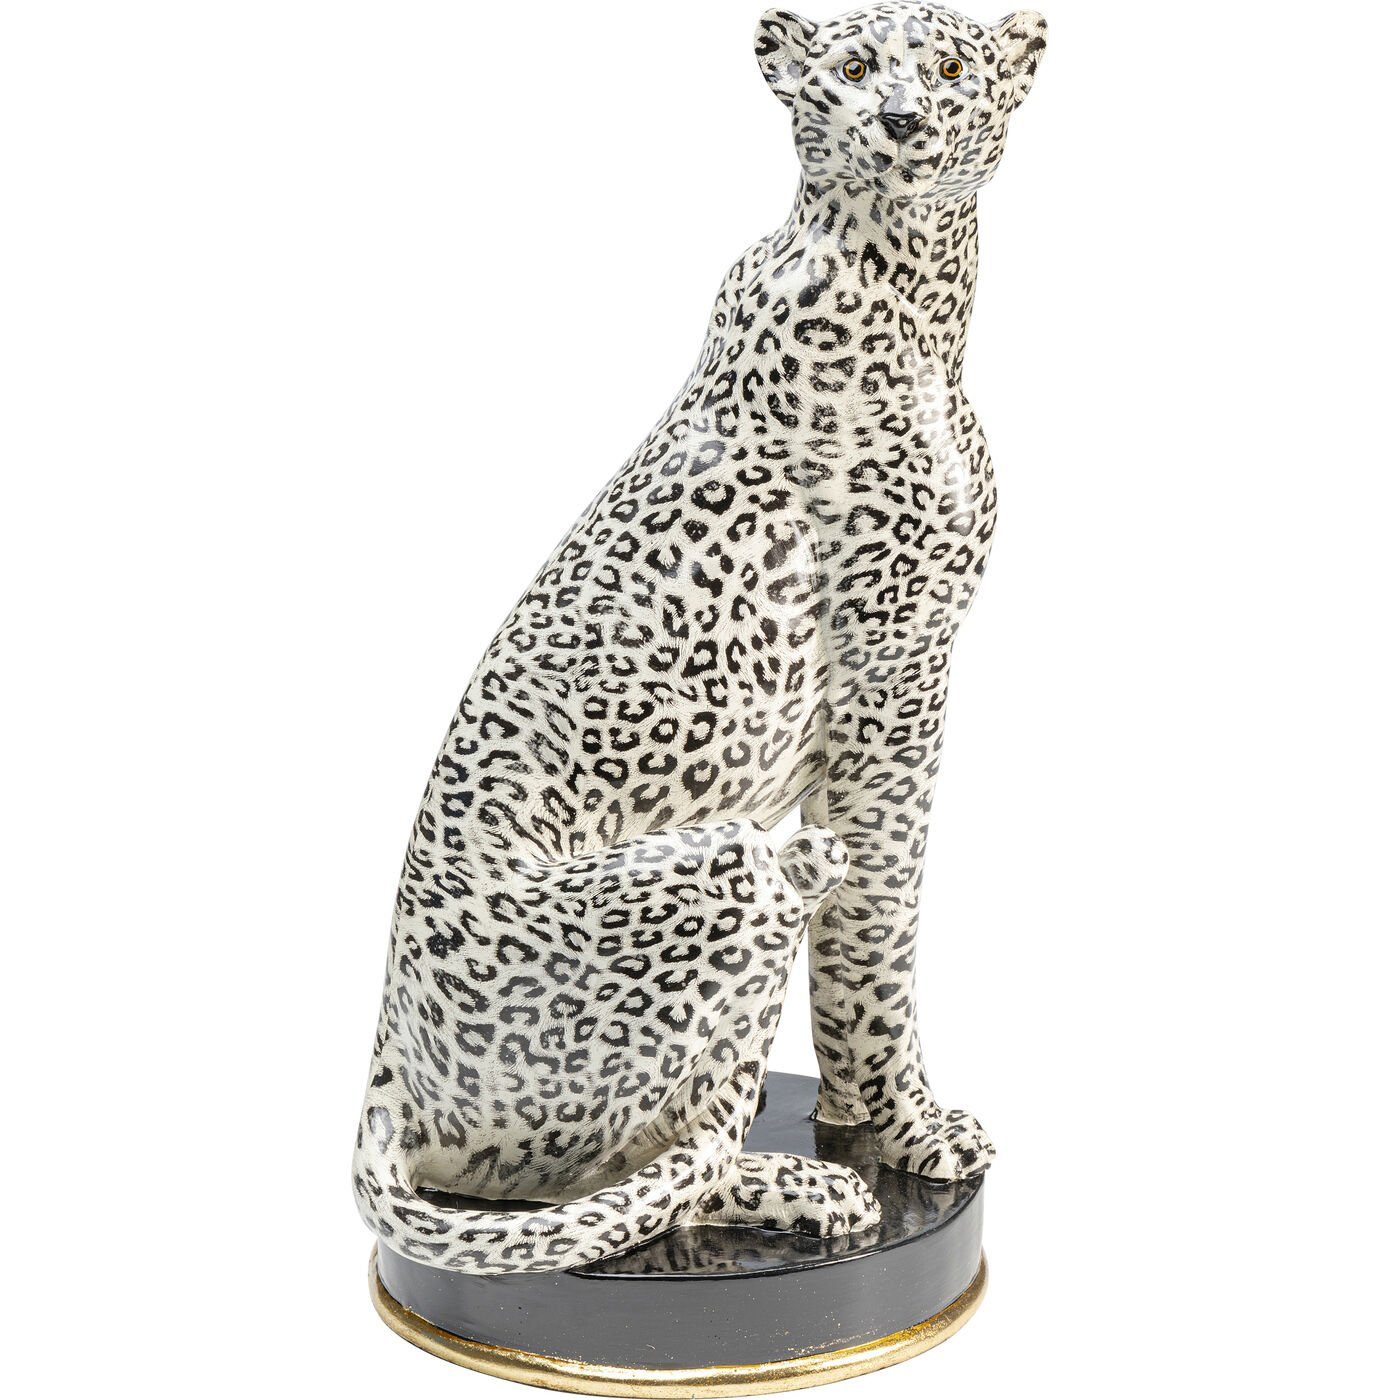 KARE Dekoobjekt »Deko Figur Cheetah«, Farbe: Weiß online kaufen | OTTO